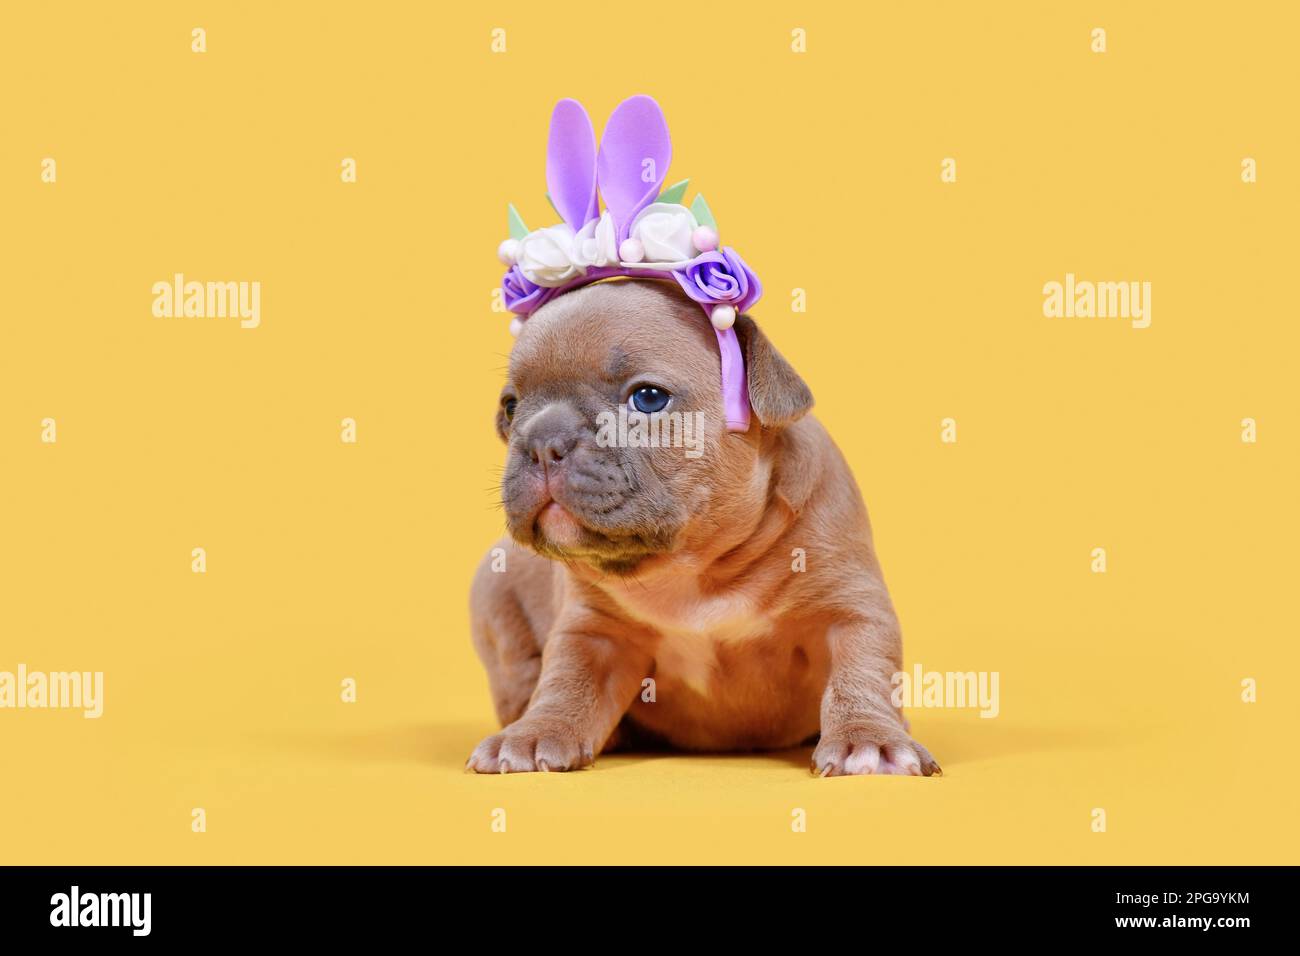 Chien Bulldog français chiot habillé comme lapin de Pâques avec des oreilles de lapin serre-tête avec des fleurs sur fond jaune Banque D'Images